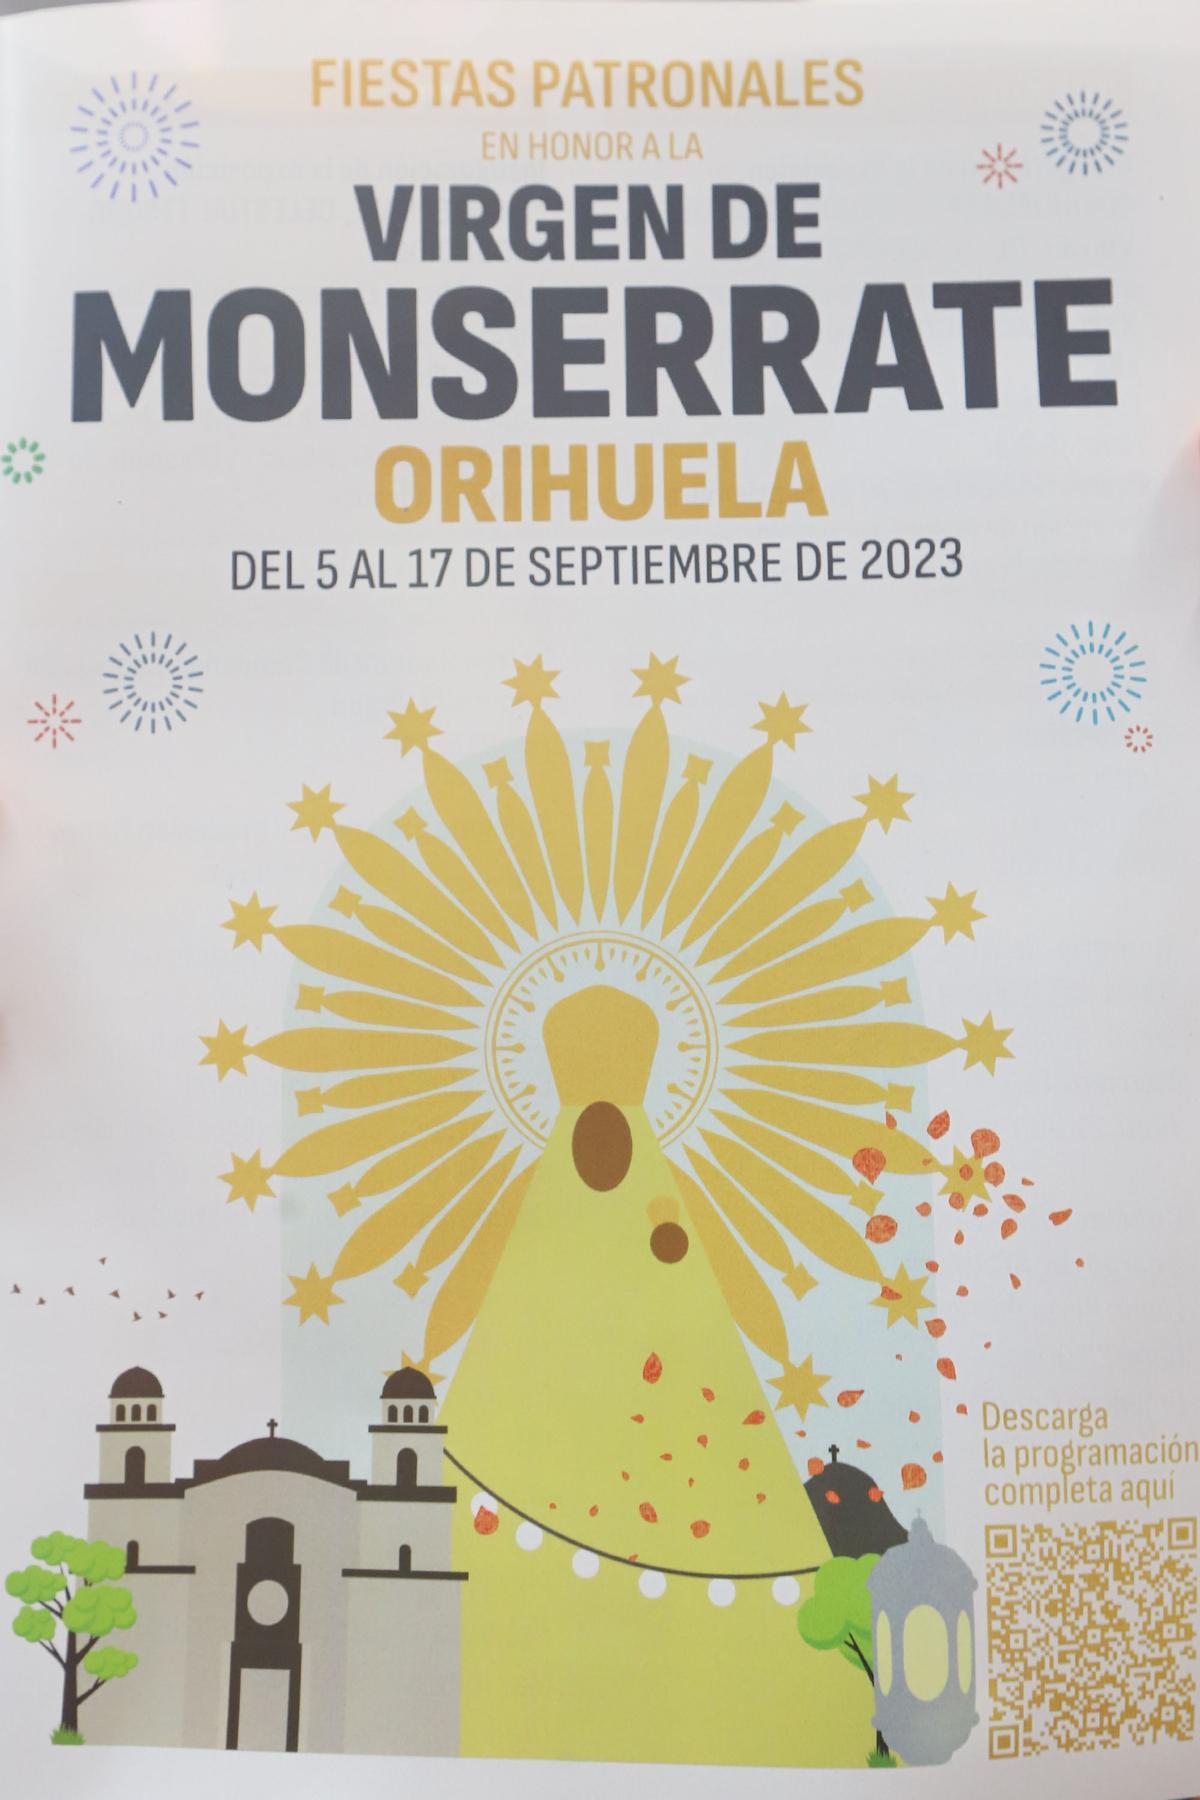 Cartel anunciador de las fiestas patronales en honor a la Virgen de Monserrate